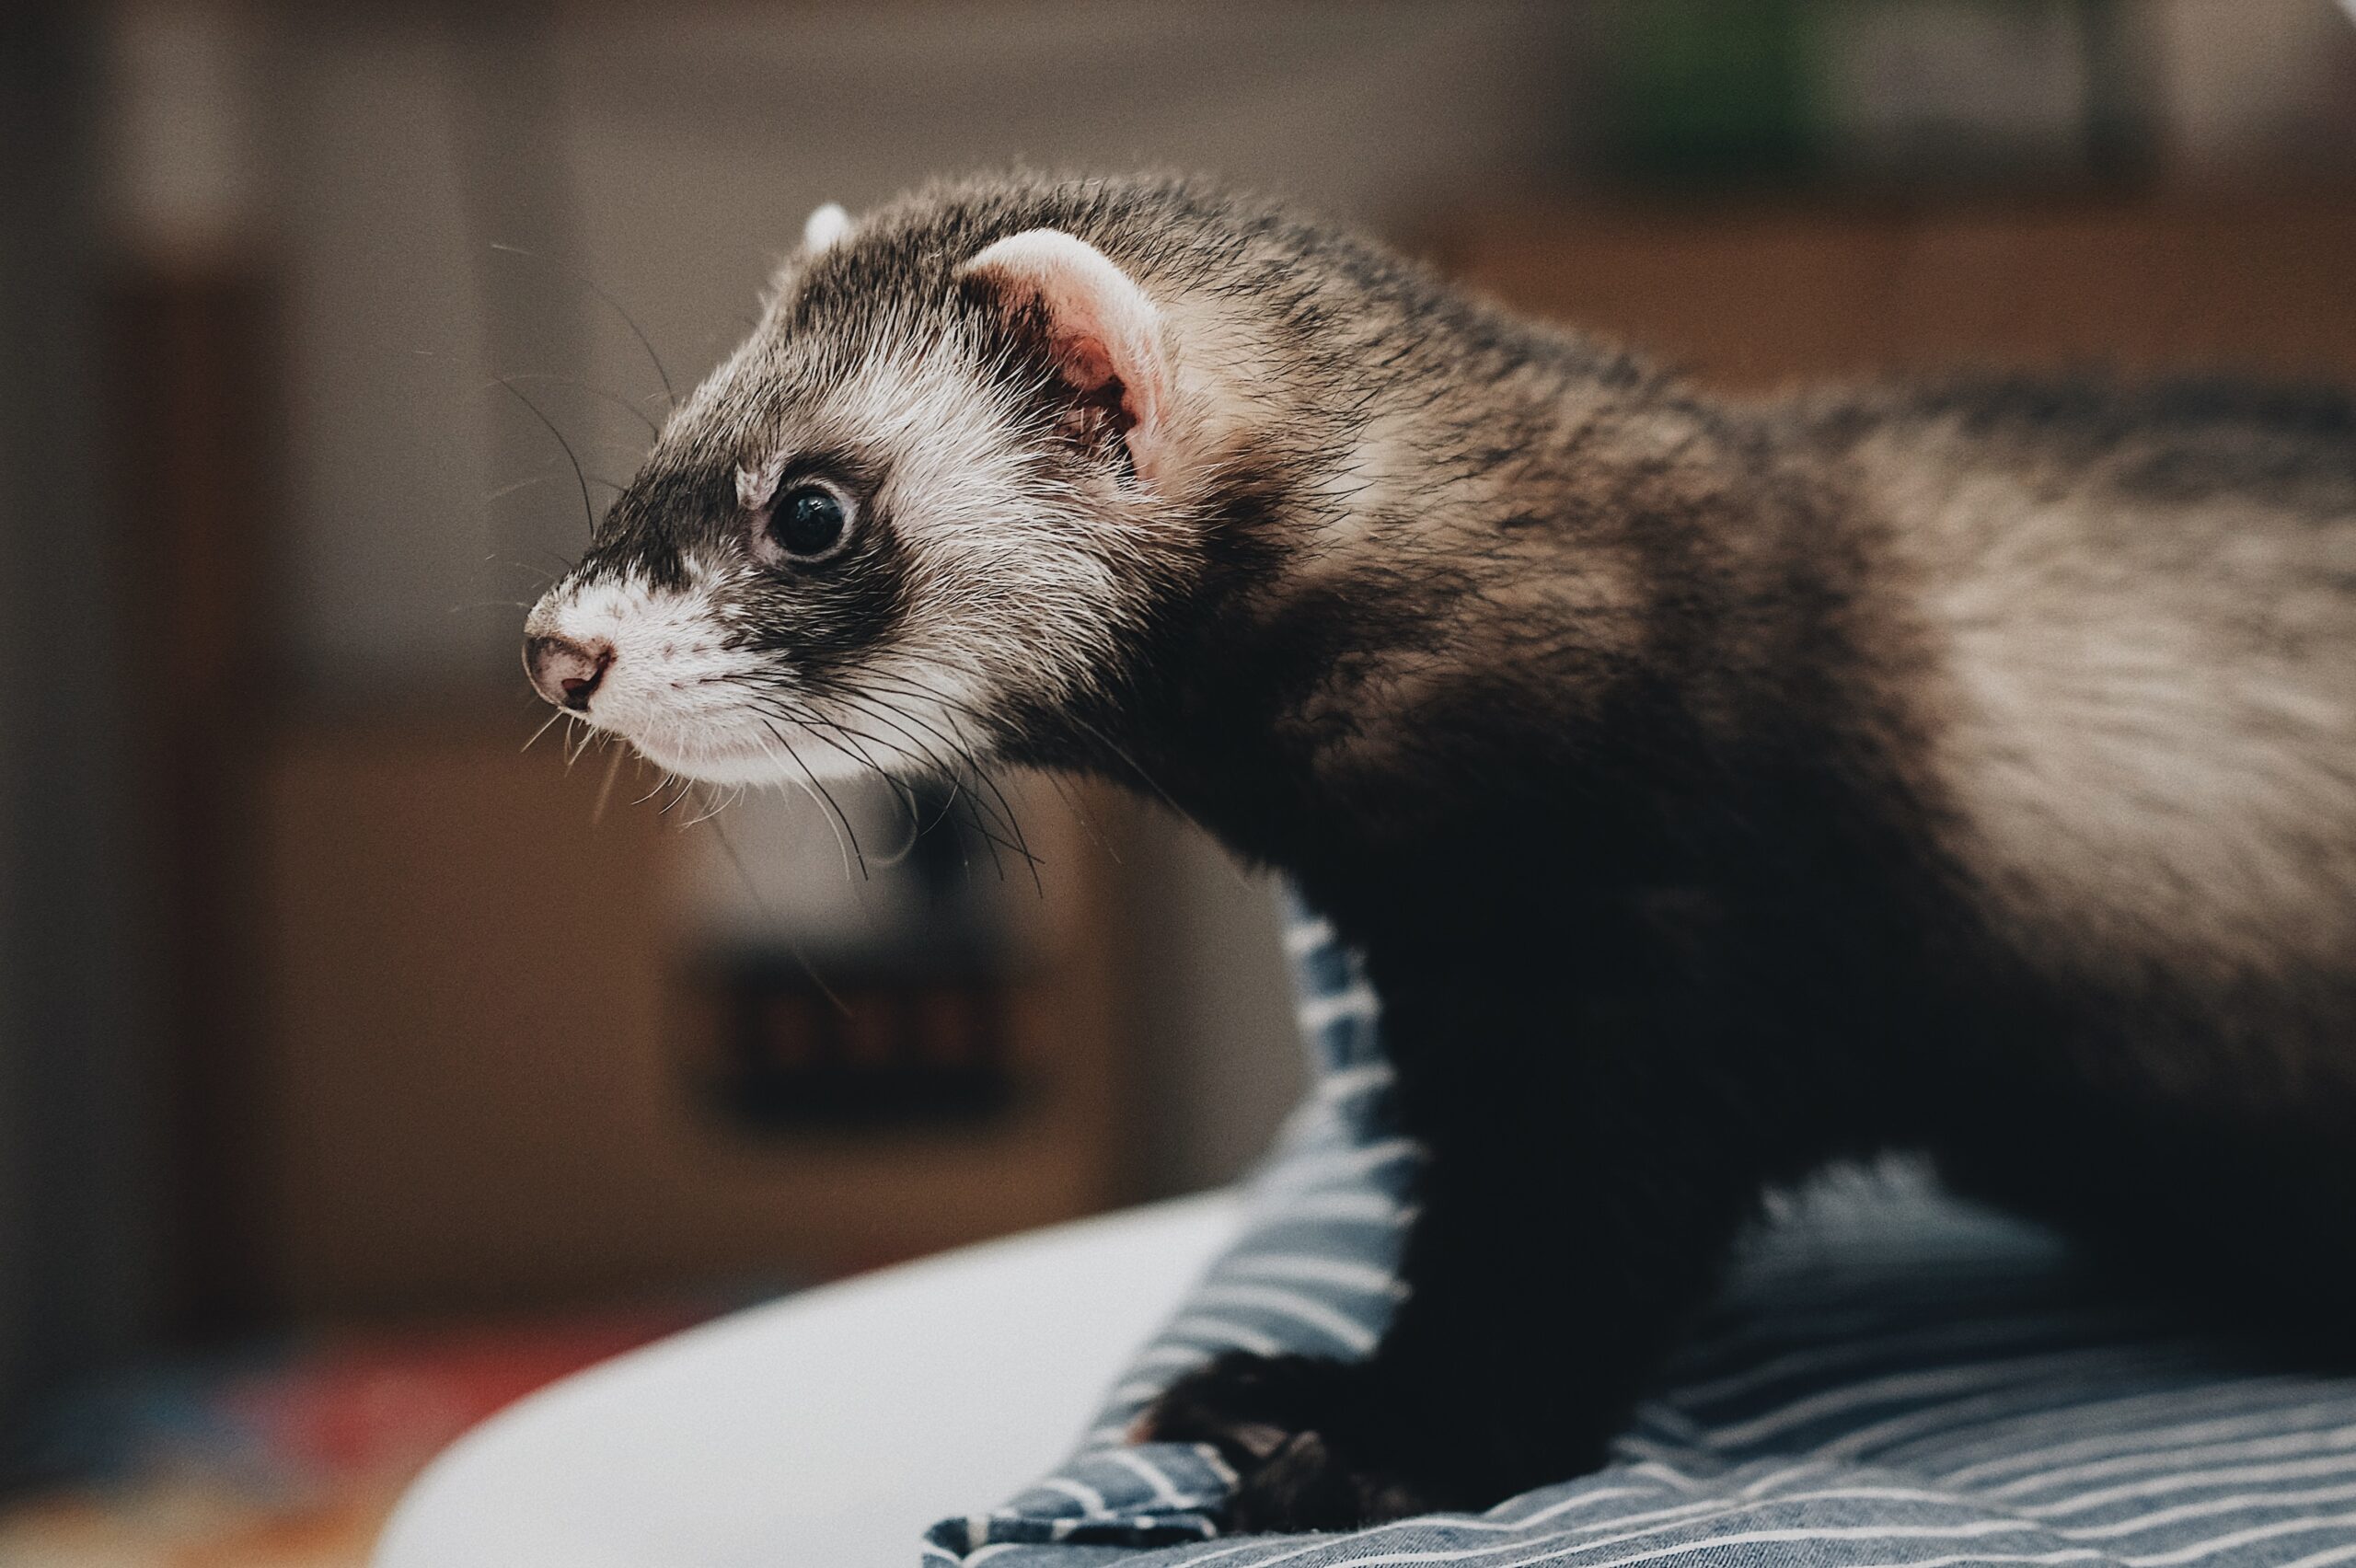 animals-images-&-pictures-pet-ferret-ferret